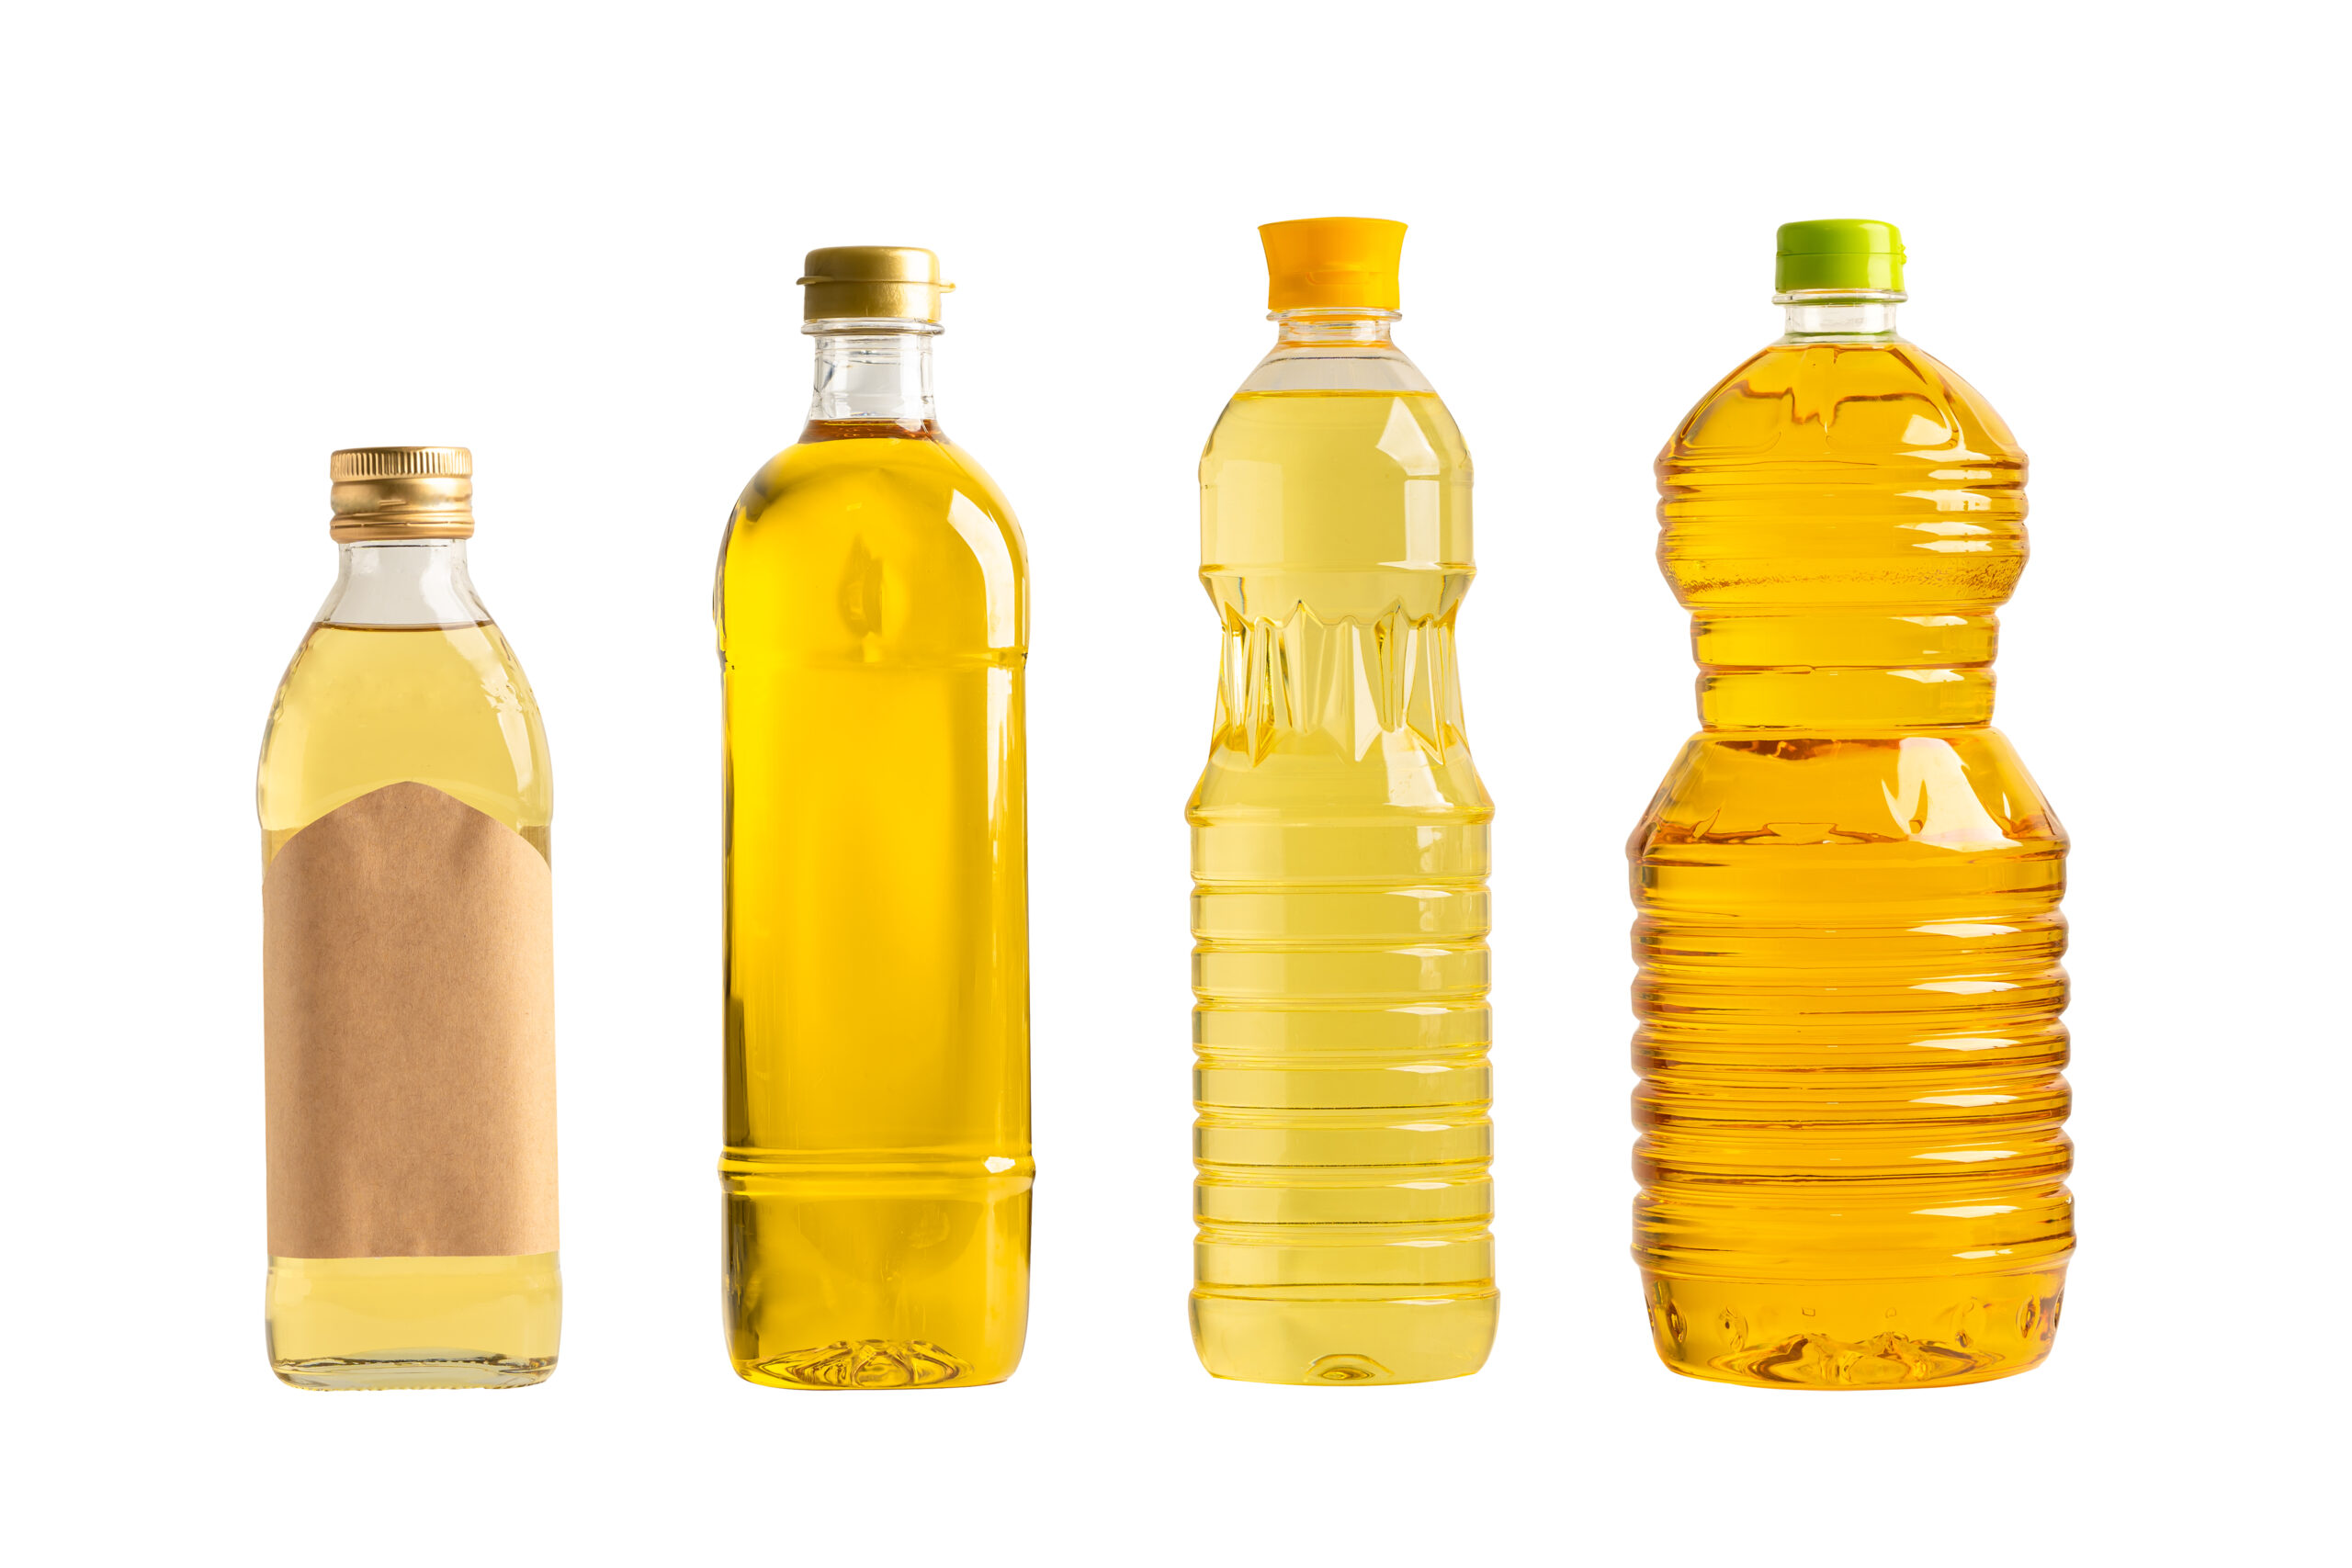 Ritiro olio esausto in Lombardia | Scegli il Bottigliolio